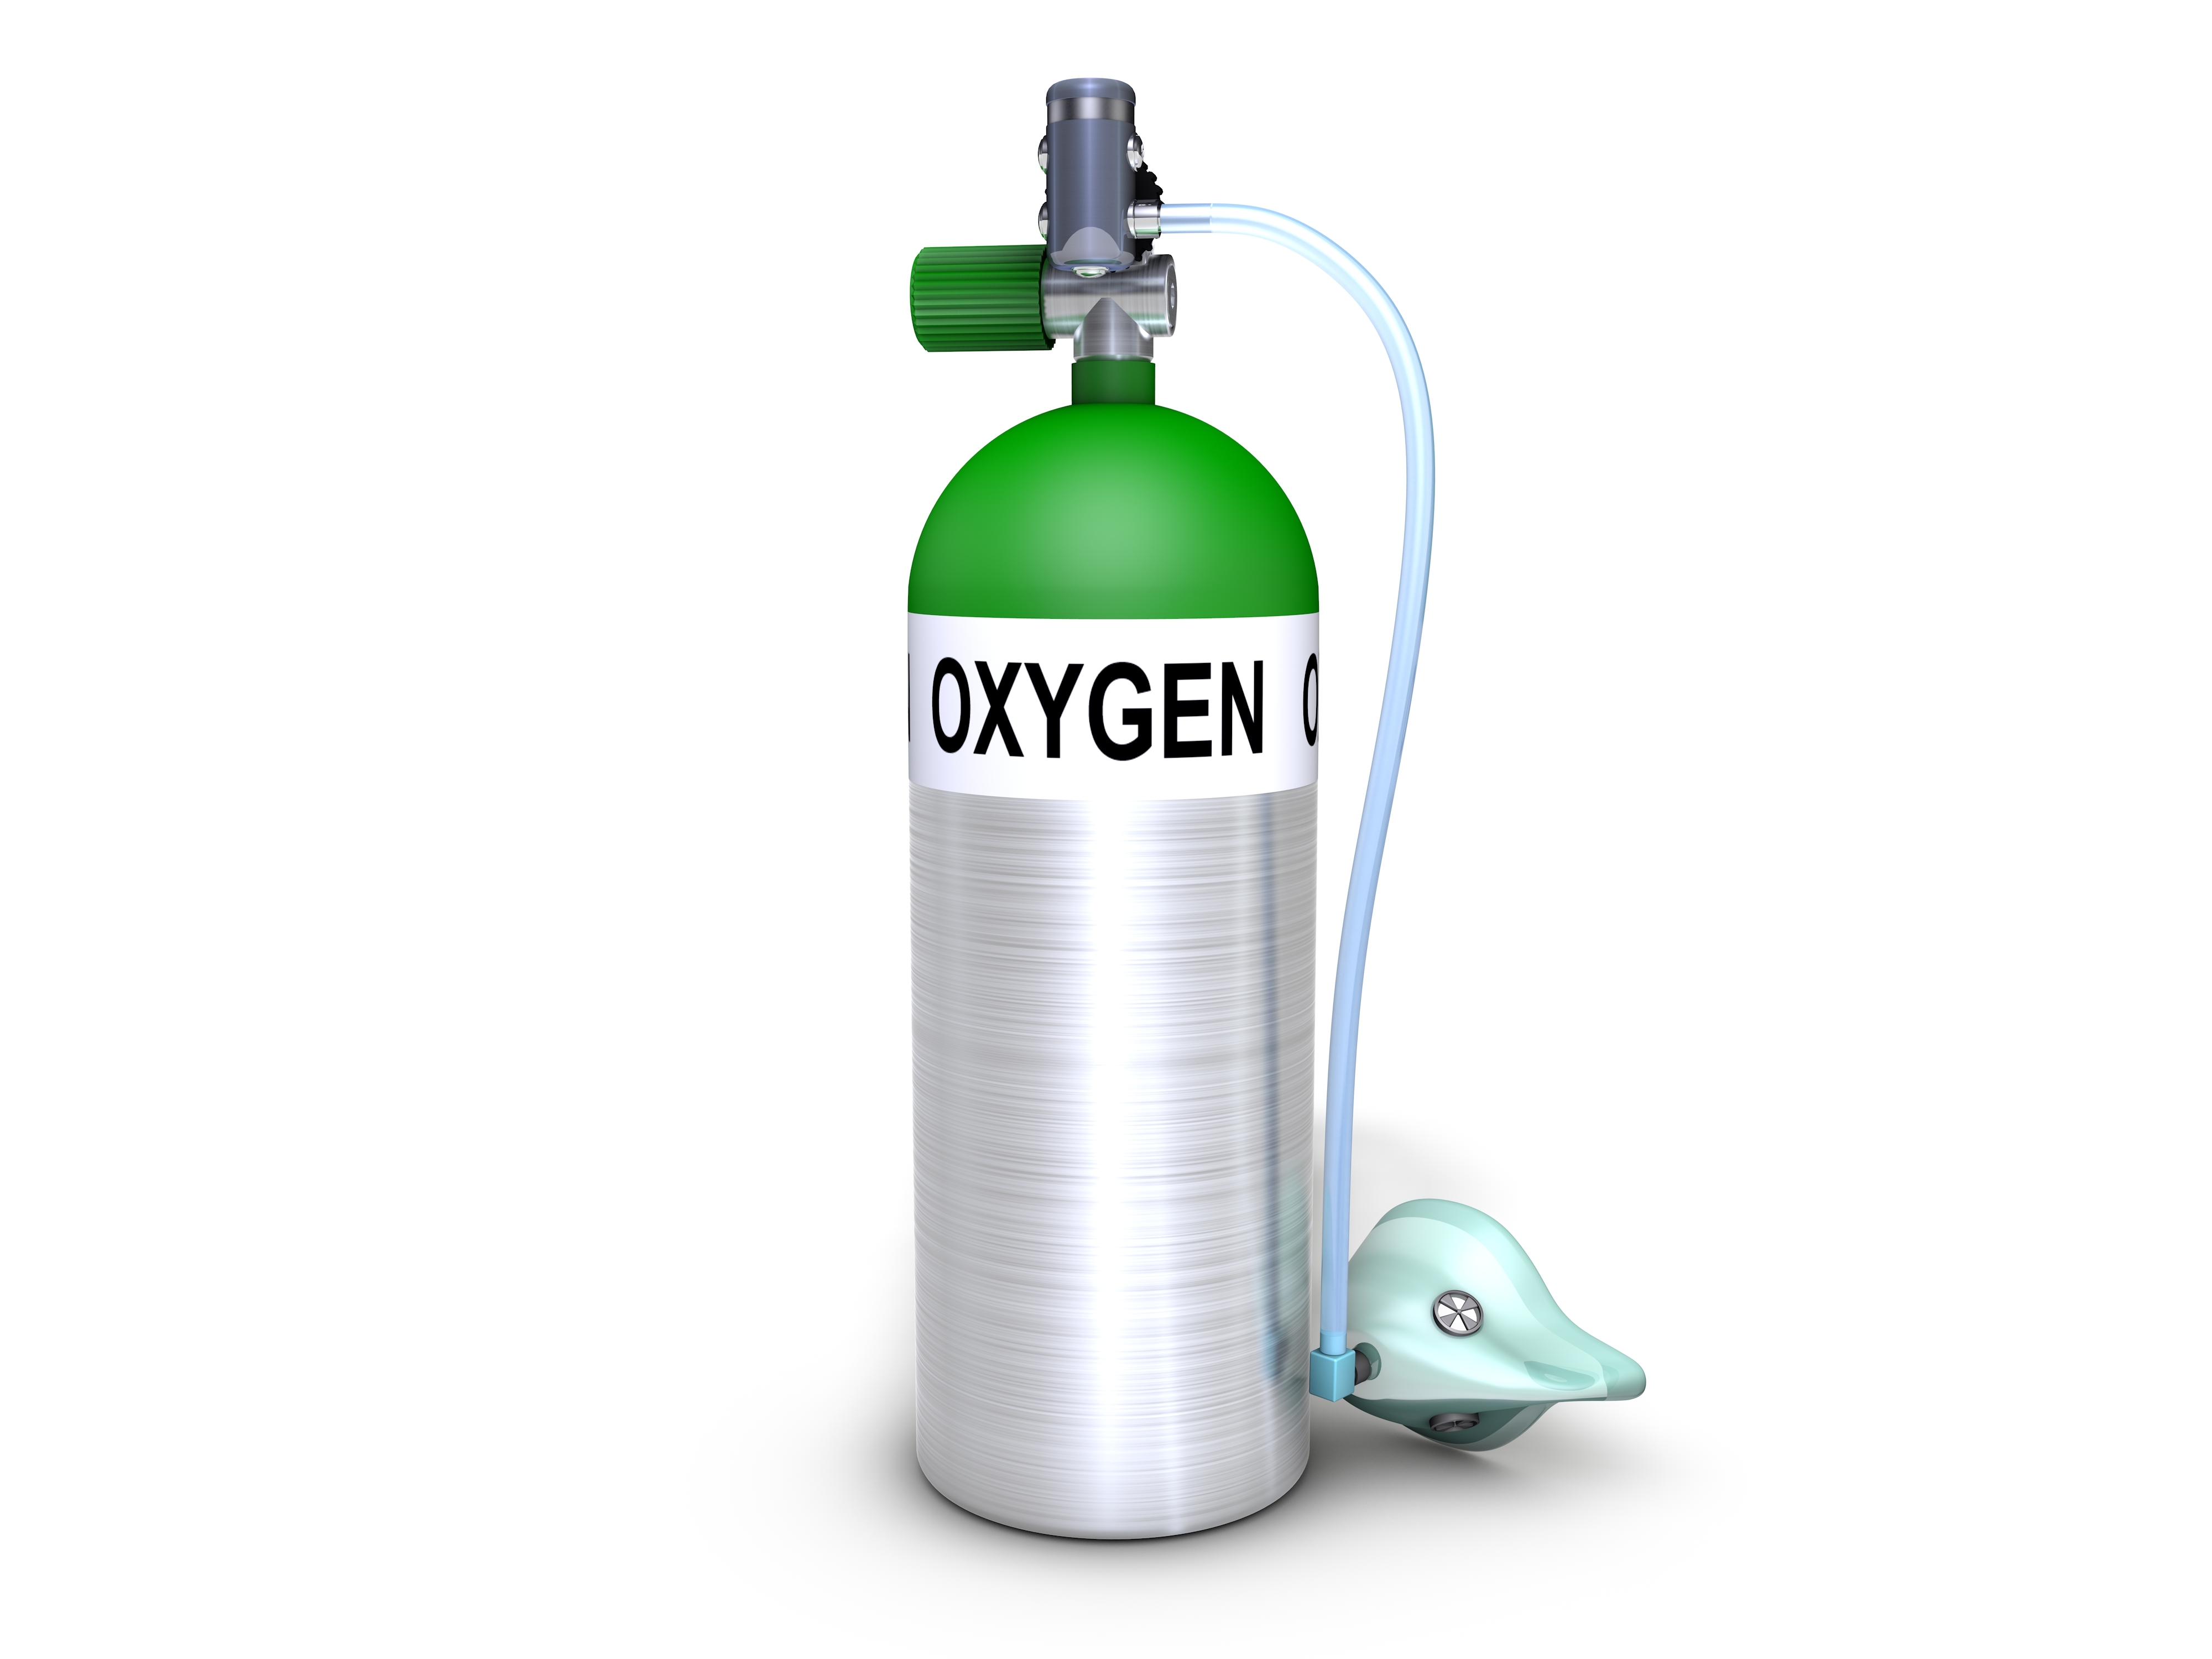 Sử dụng bình oxy trong trường hợp nào? Những lưu ý khi sử dụng bình thở oxy